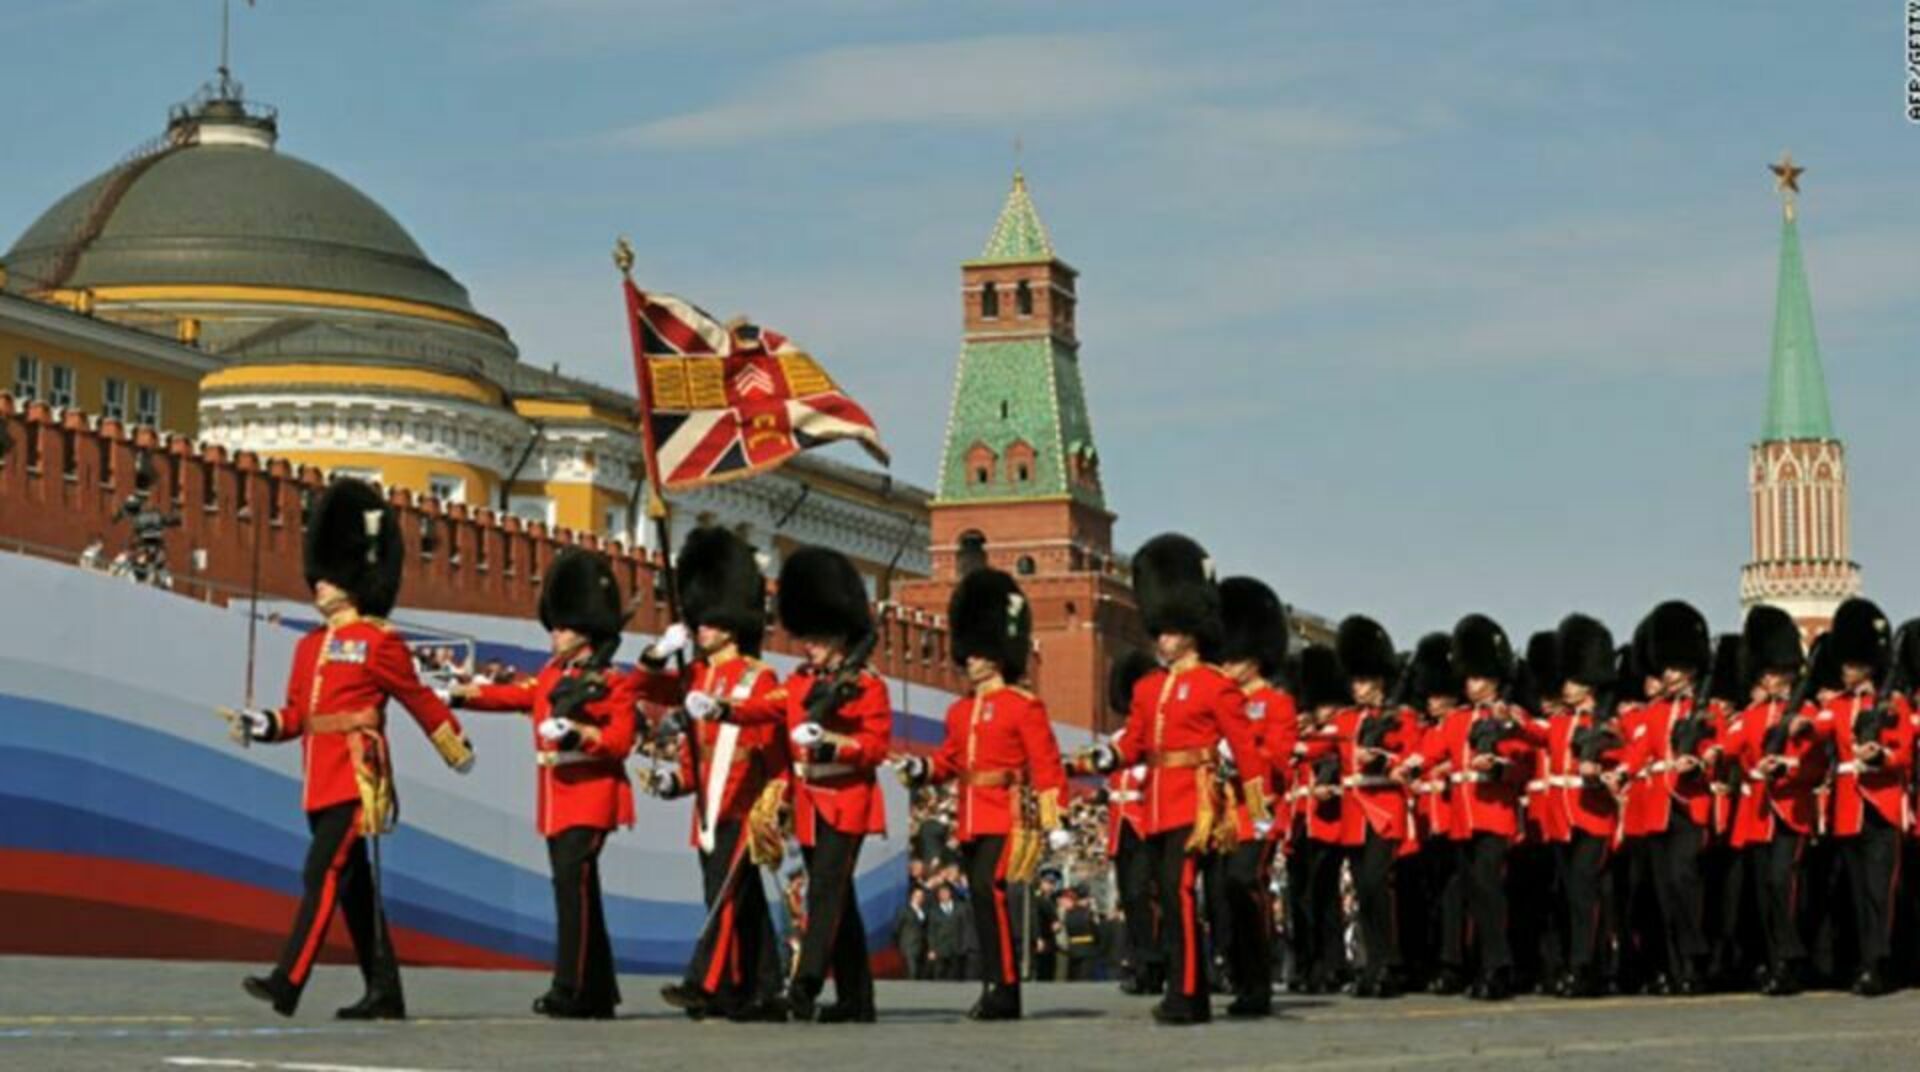 5 мая 2010. Парад Победы 2010 года на красной площади. Парад на красной площади 9 мая 2010 года. Войска НАТО на красной площади парад. Американцы на параде Победы в Москве 2010.